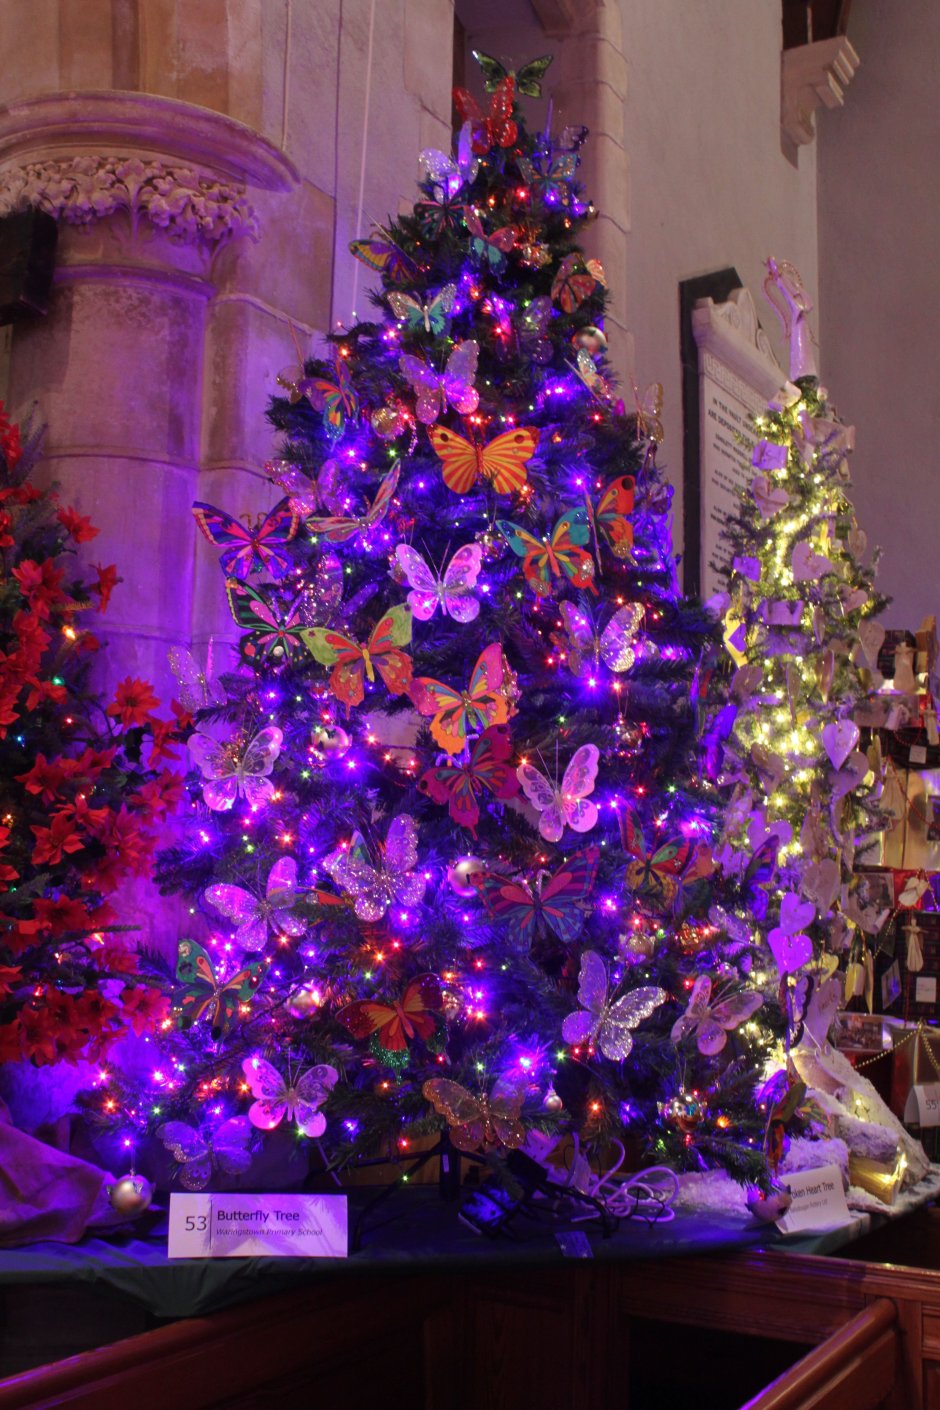 Новогодняя елка фиолетовая